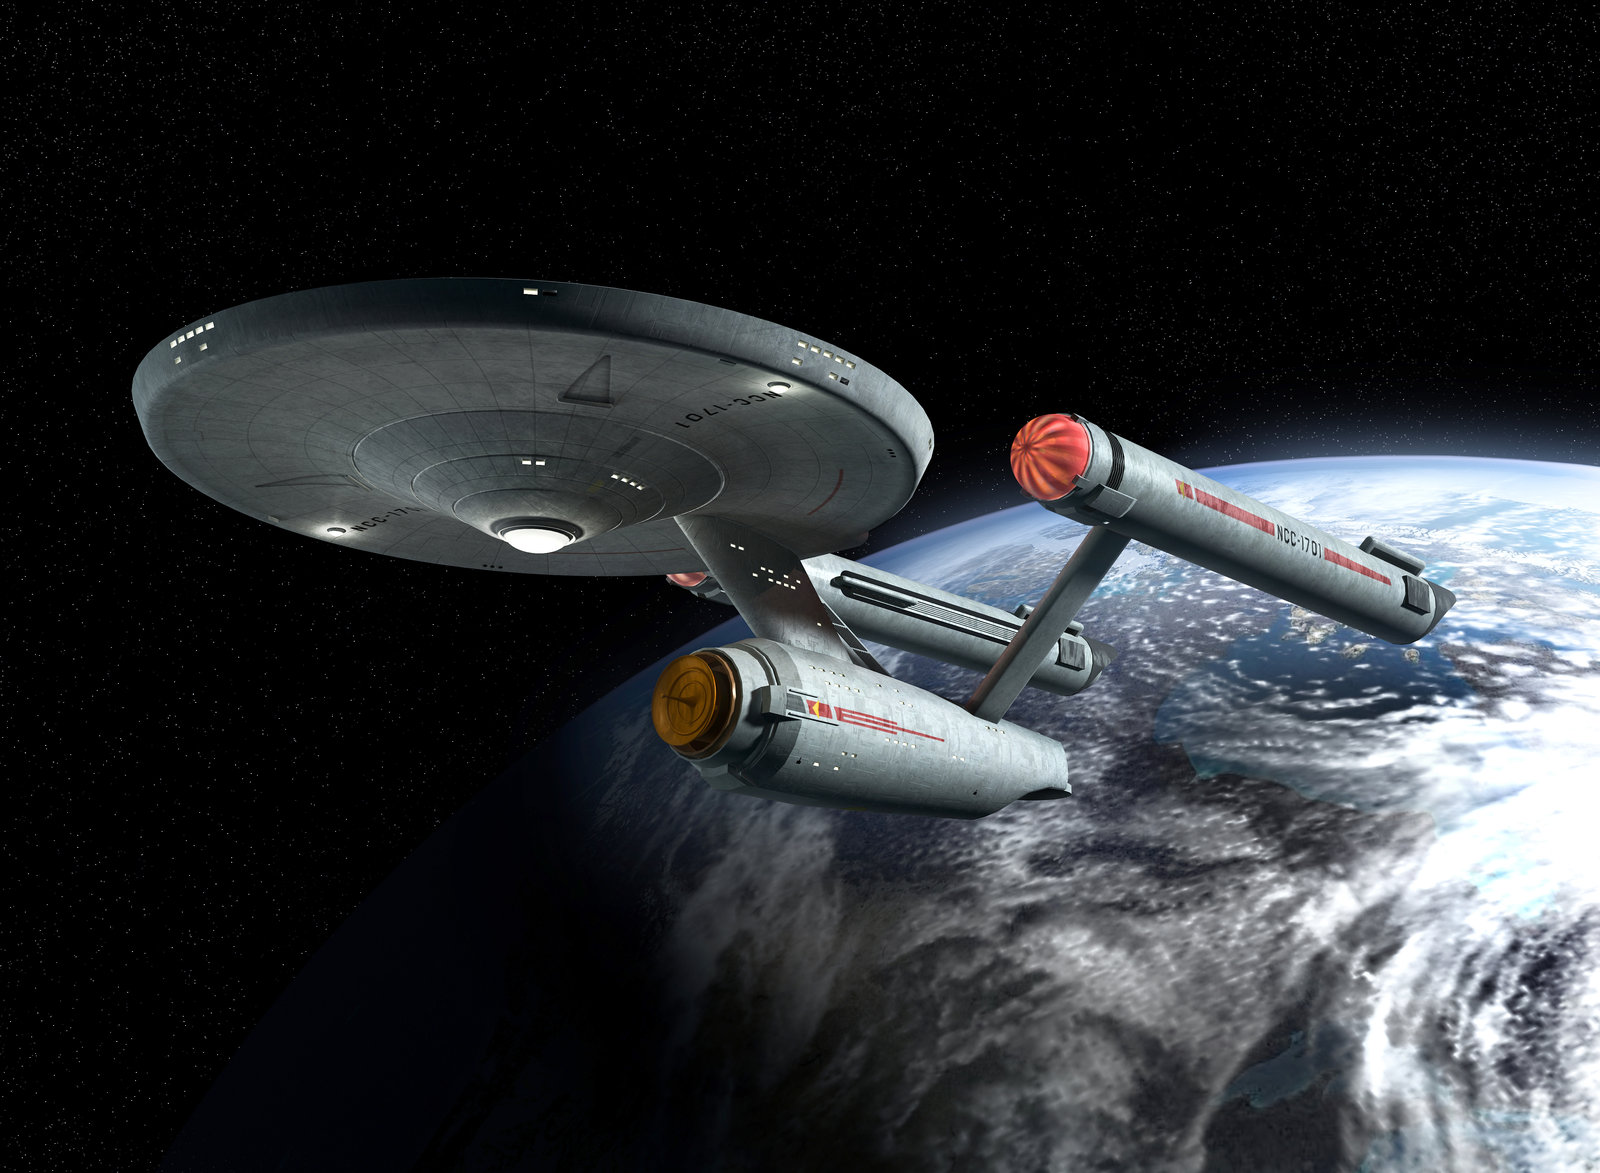 Star Trek Enterprise Wallpapers Group 90